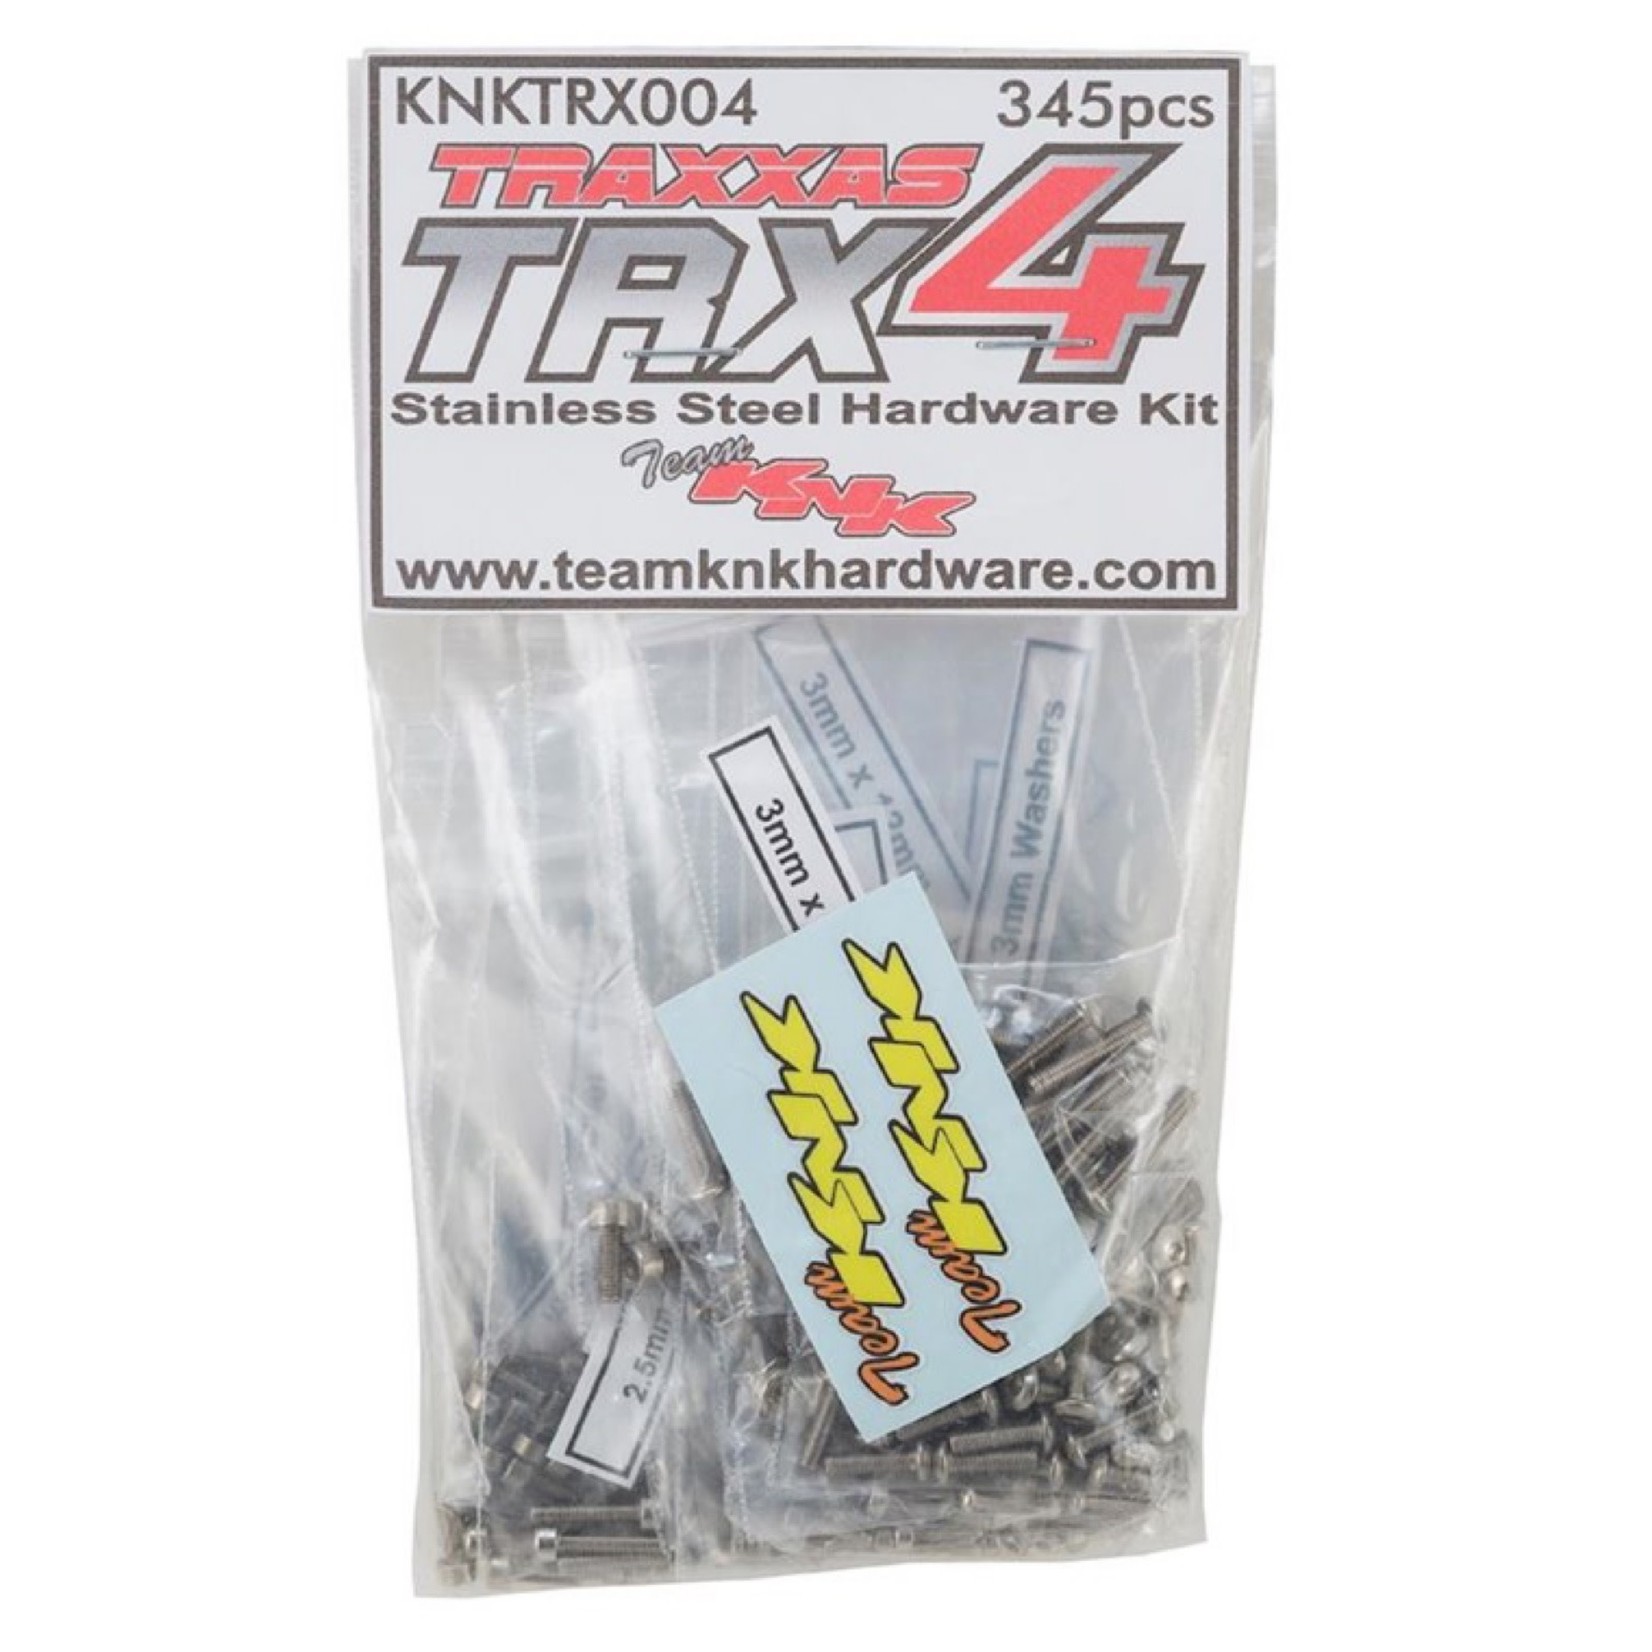 Team KNK Team KNK Traxxas TRX4 Stainless Hardware Kit (345) KNKTRX004